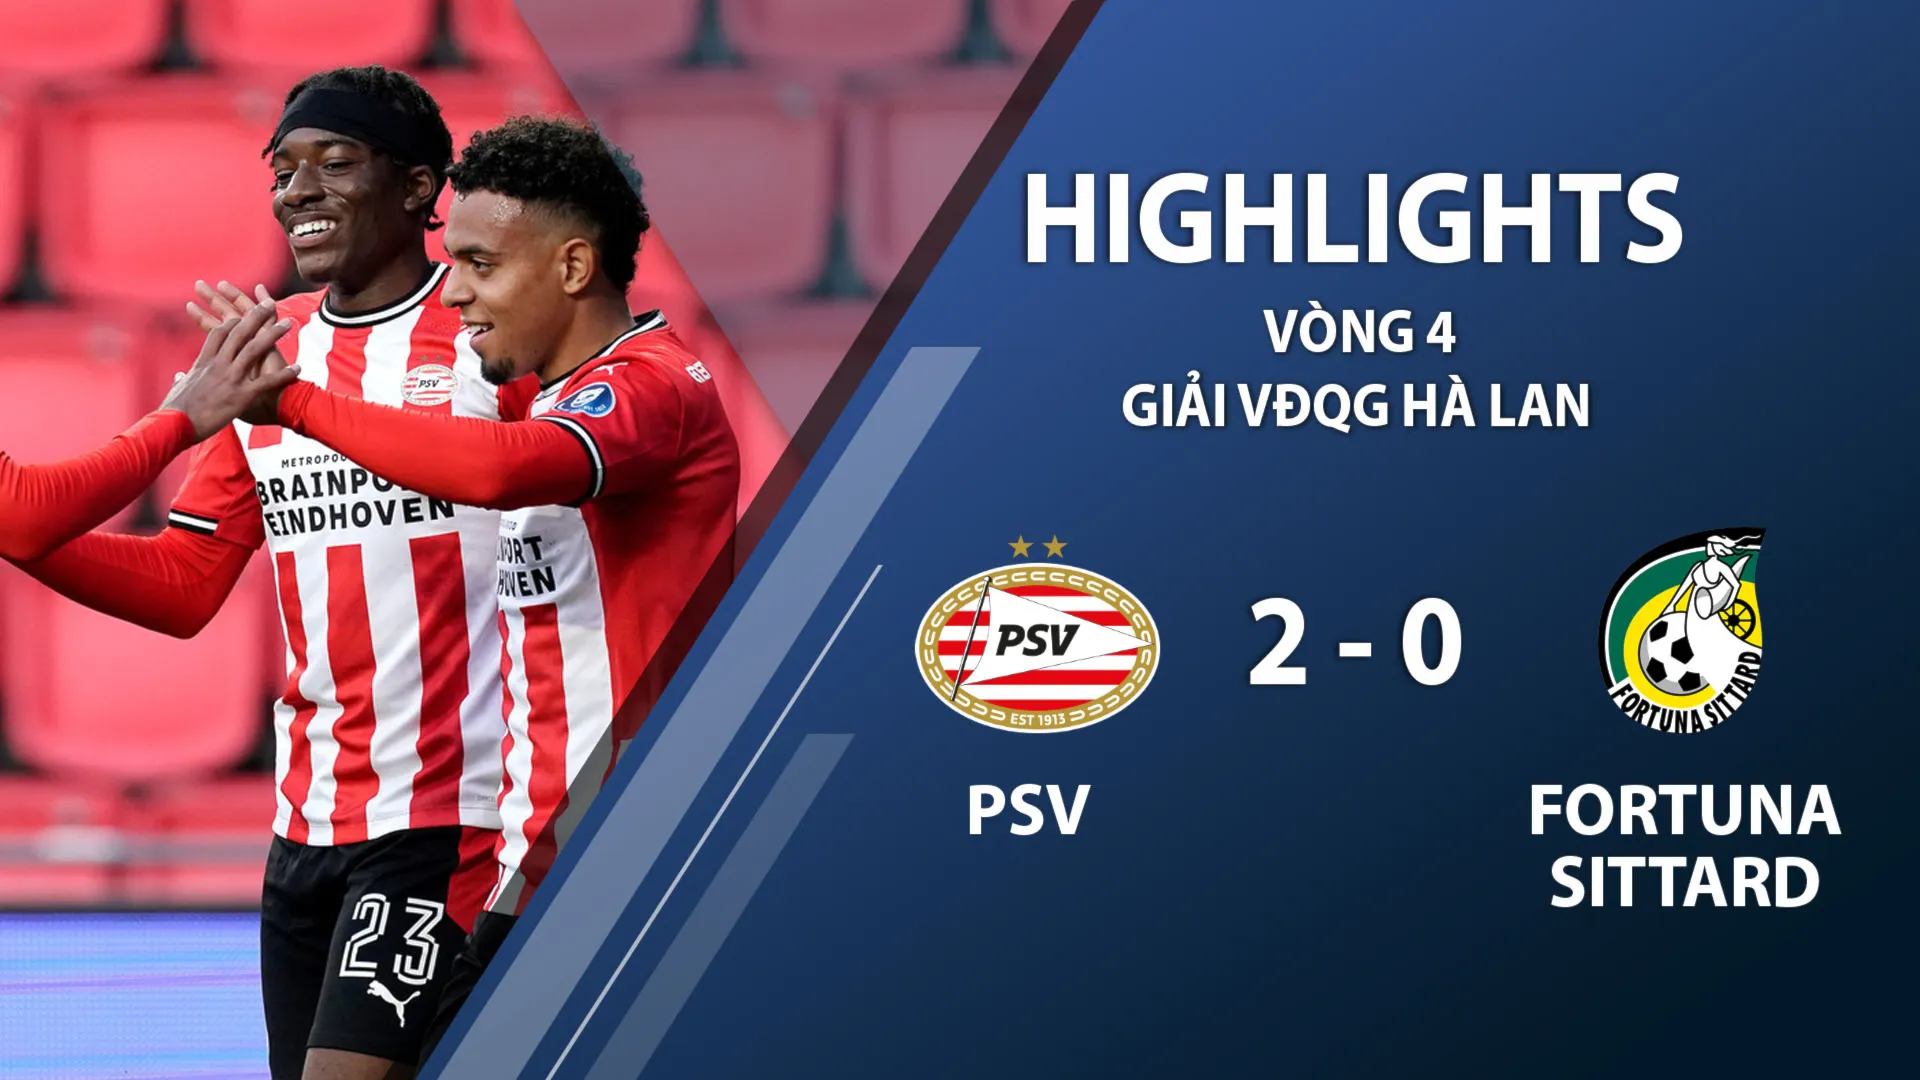 Highlights PSV Eindhoven 2-0 Fortuna Sittard (vòng 4 giải VĐQG Hà Lan 2020/21)	